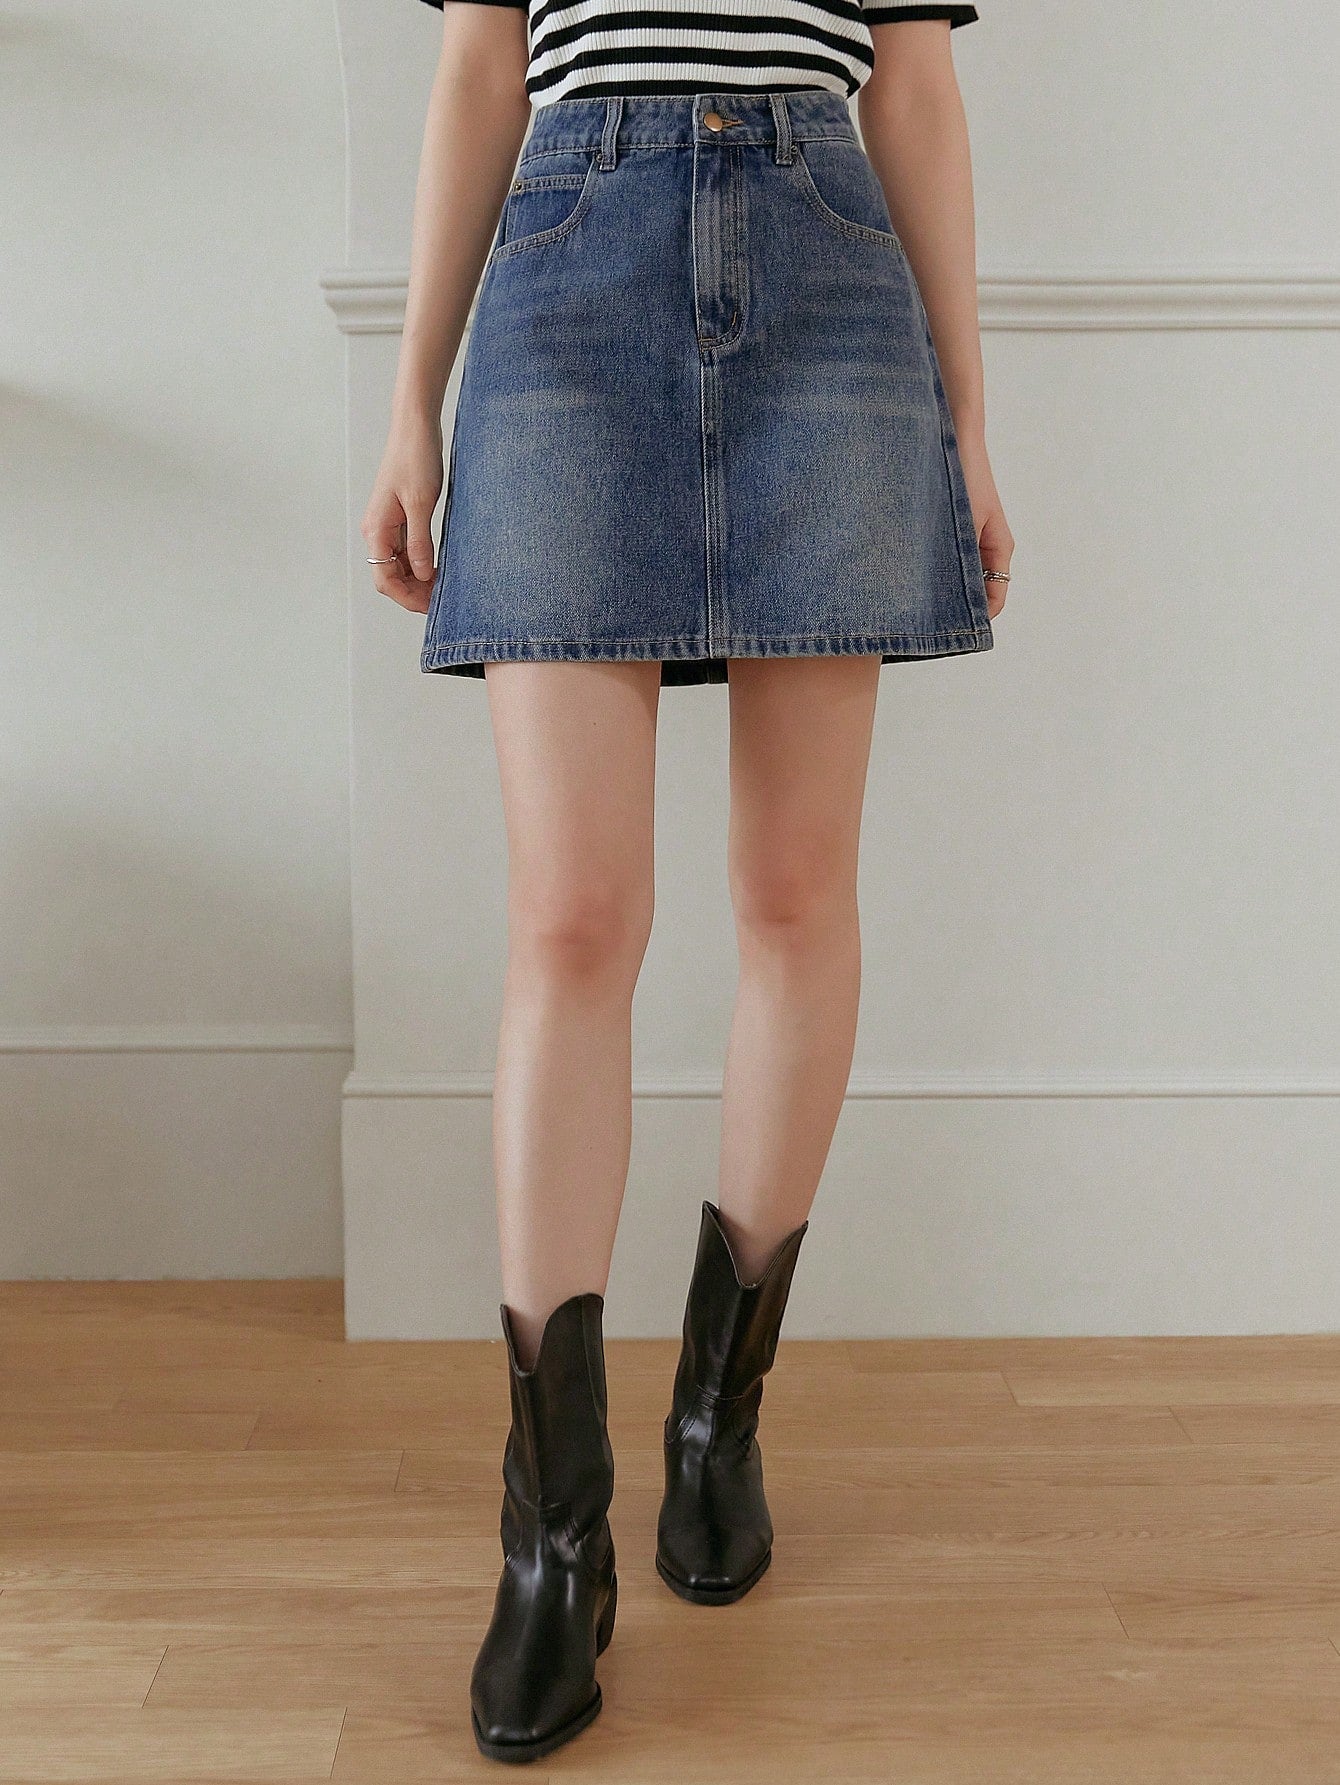 High Waist Women's Denim Skirt With Pockets, A-Line Style